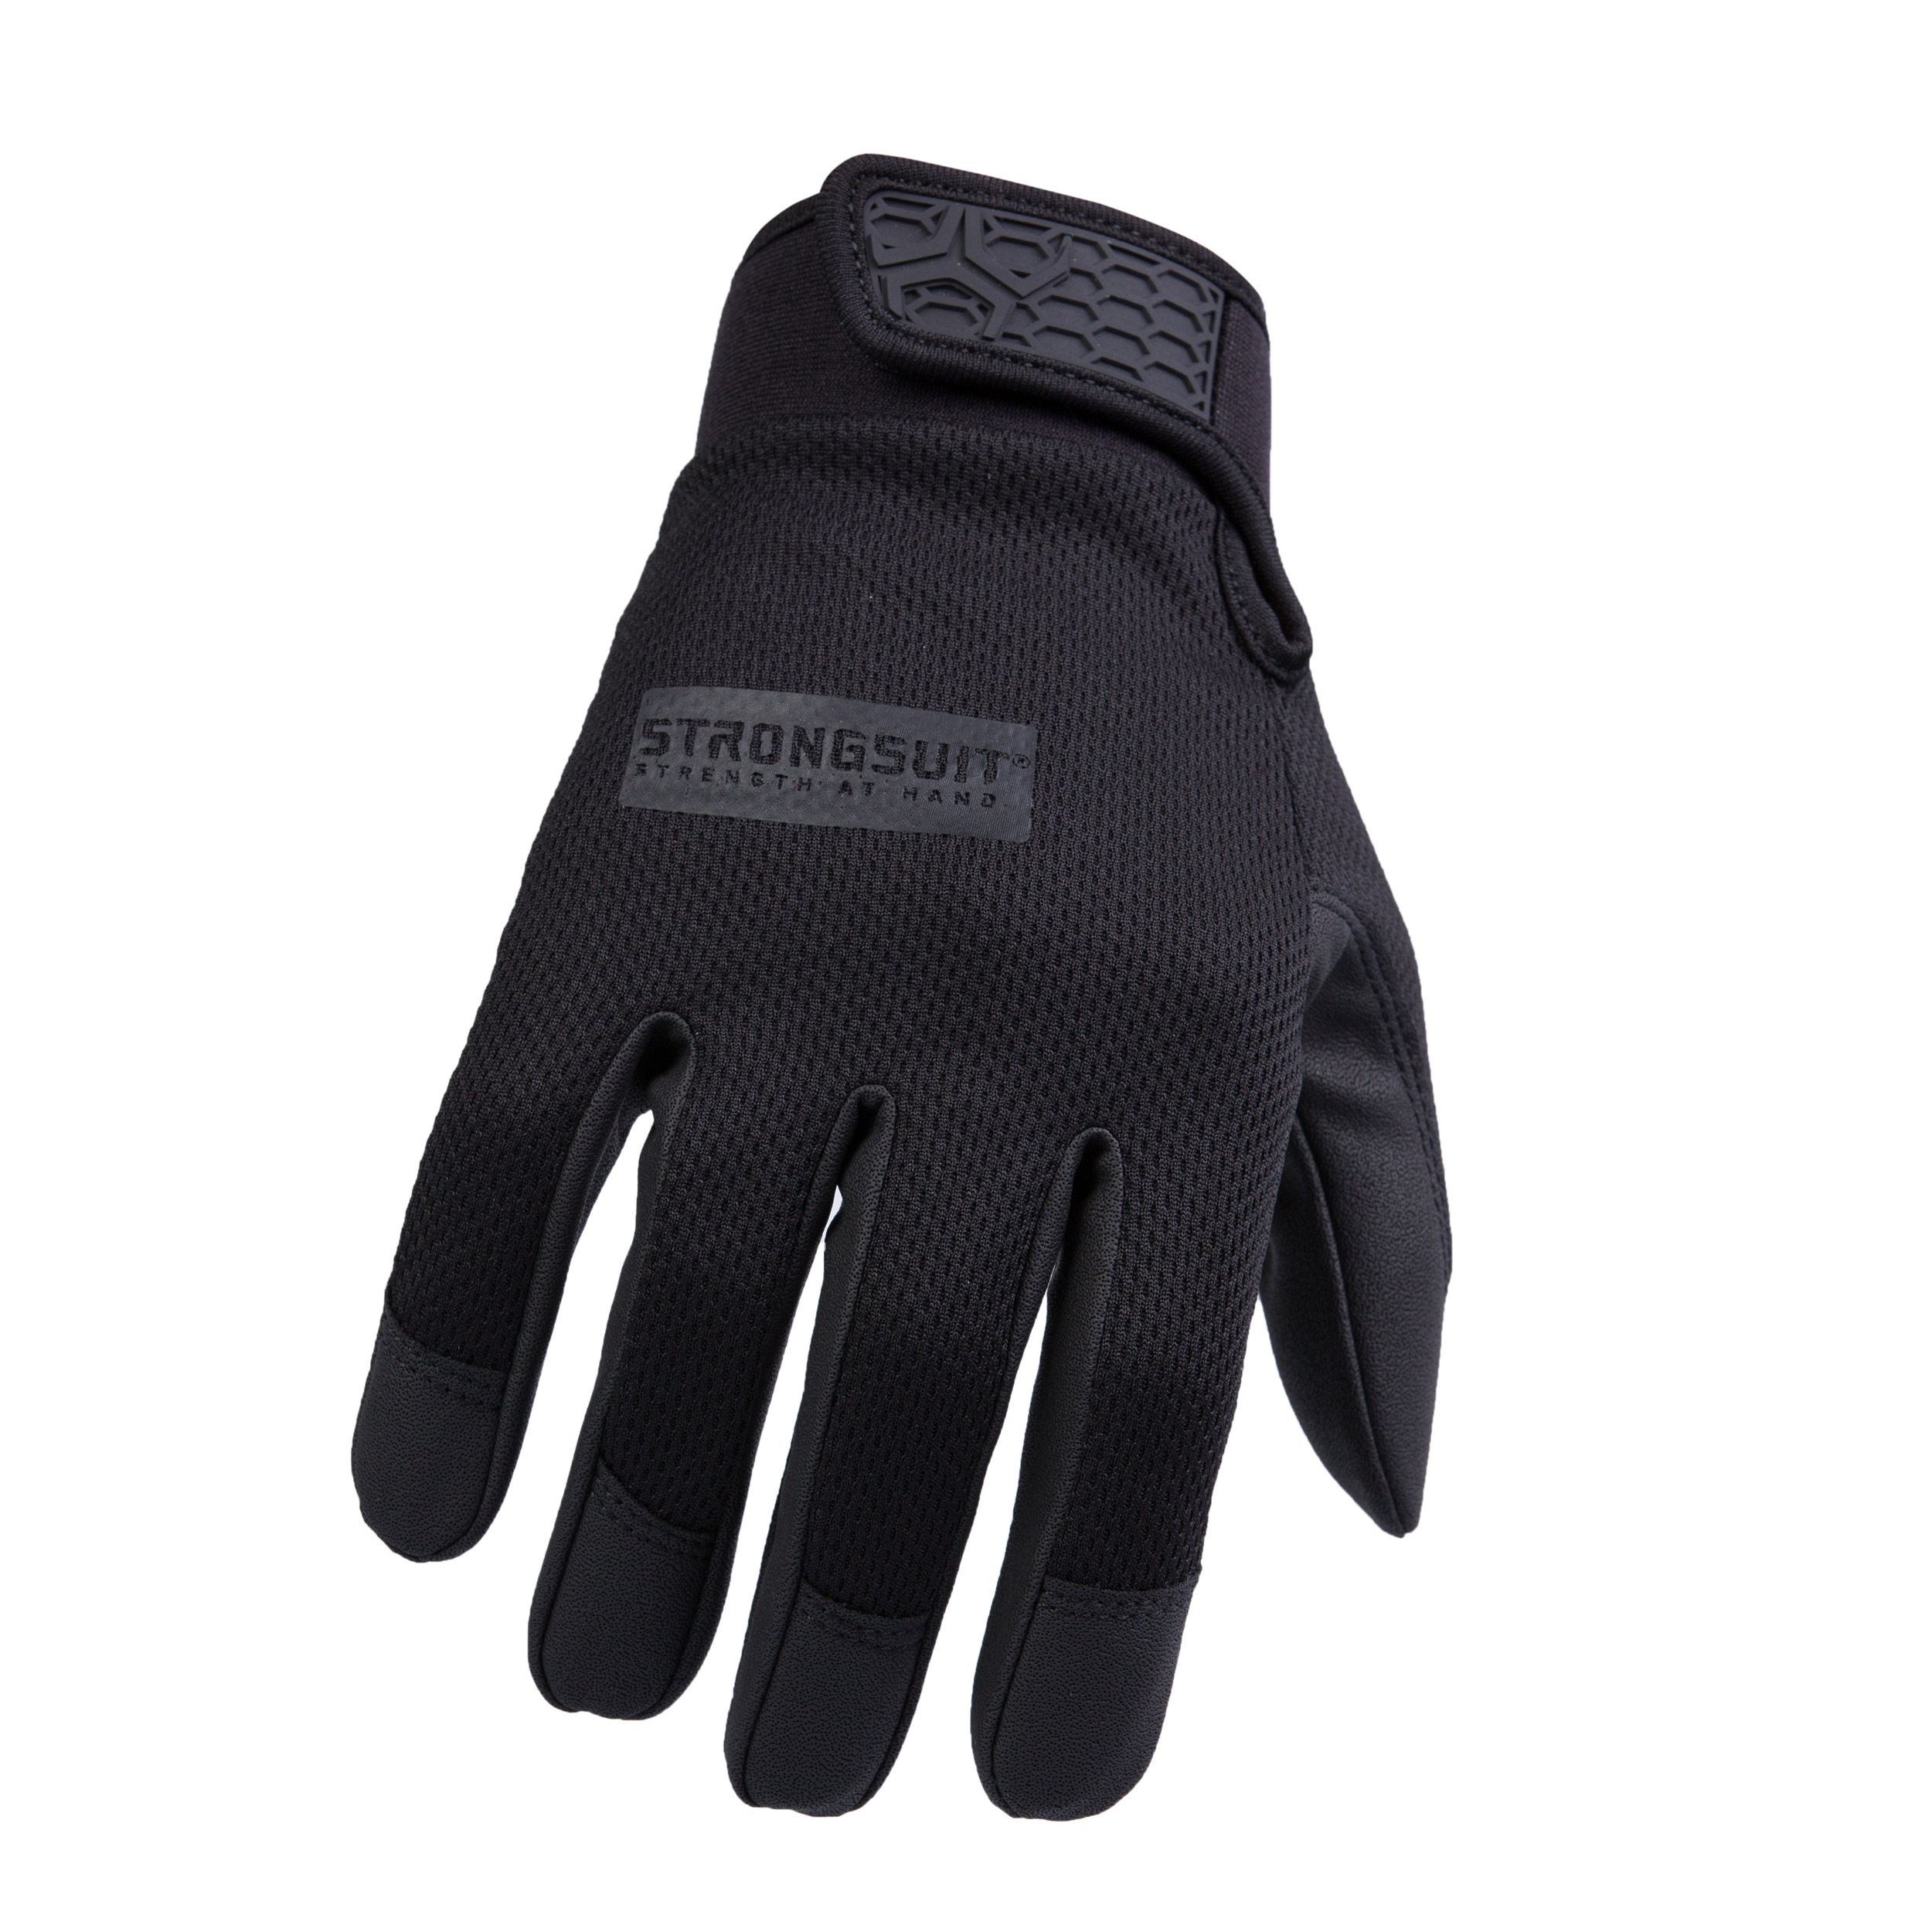 Second Skin Gloves Black Gloves Large